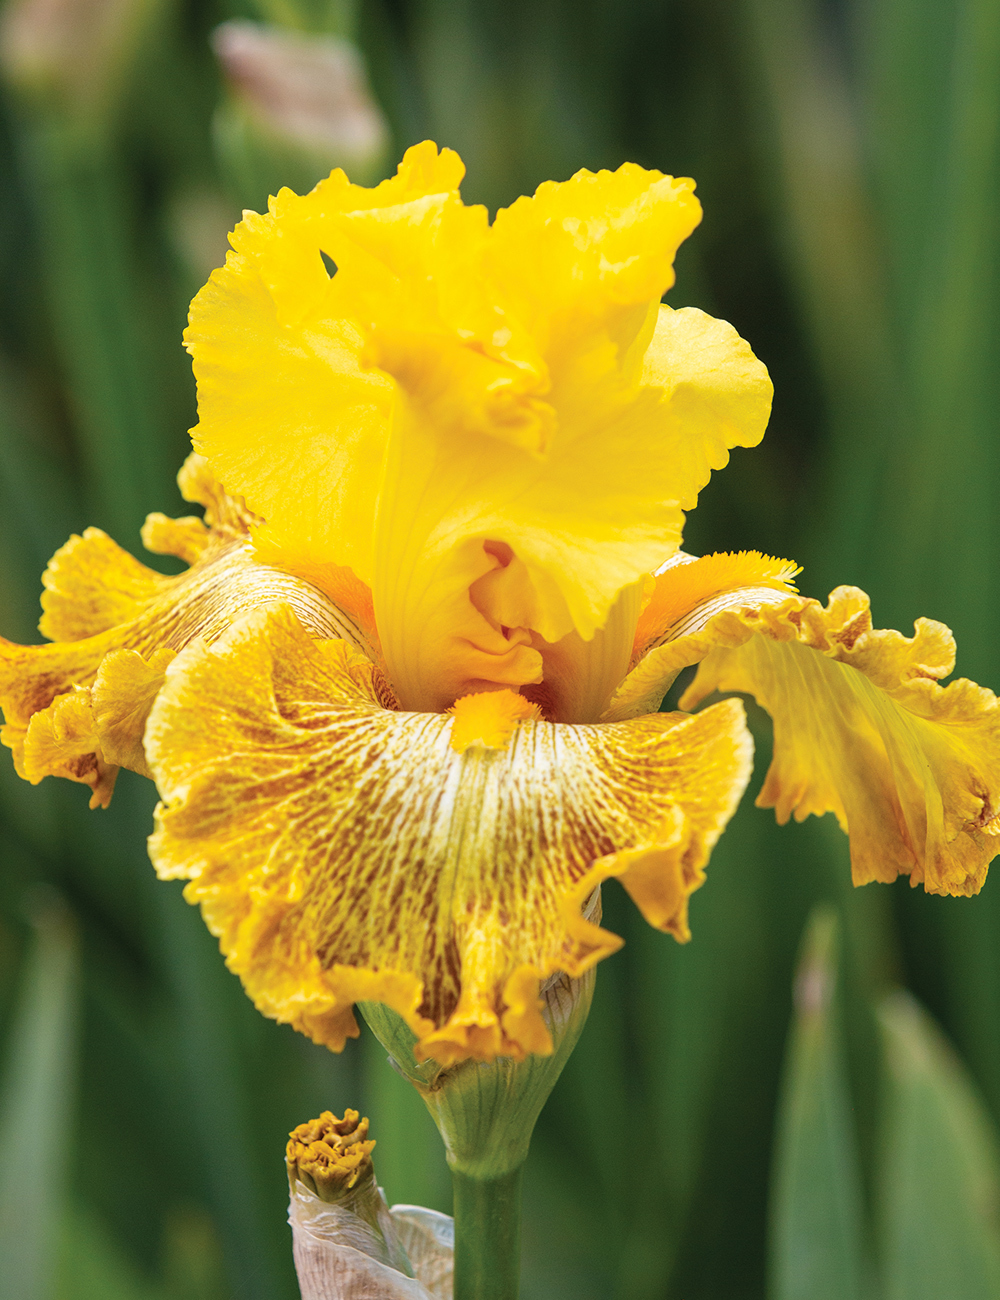 Bearded Iris 'Woven Sunlight'